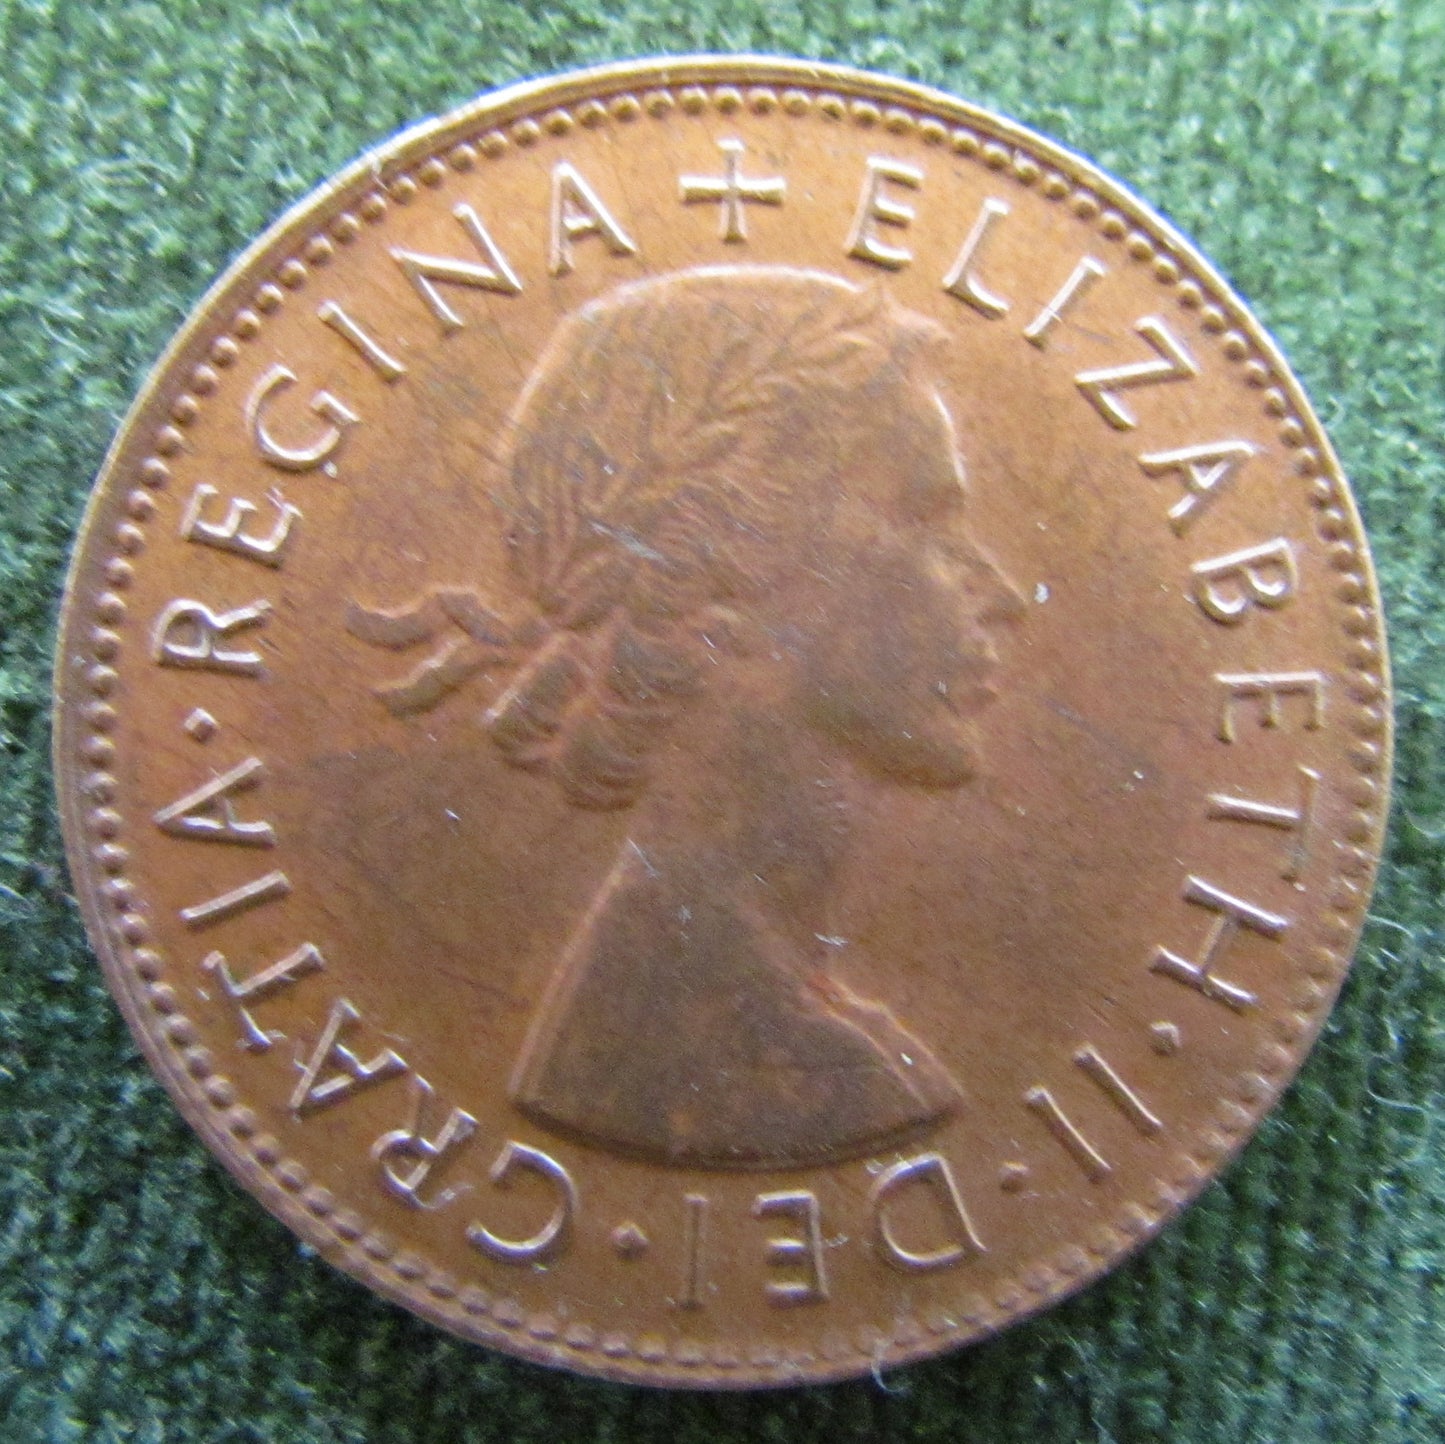 Australian 1953 1/2d Half Penny Queen Elizabeth II Coin - High Grade